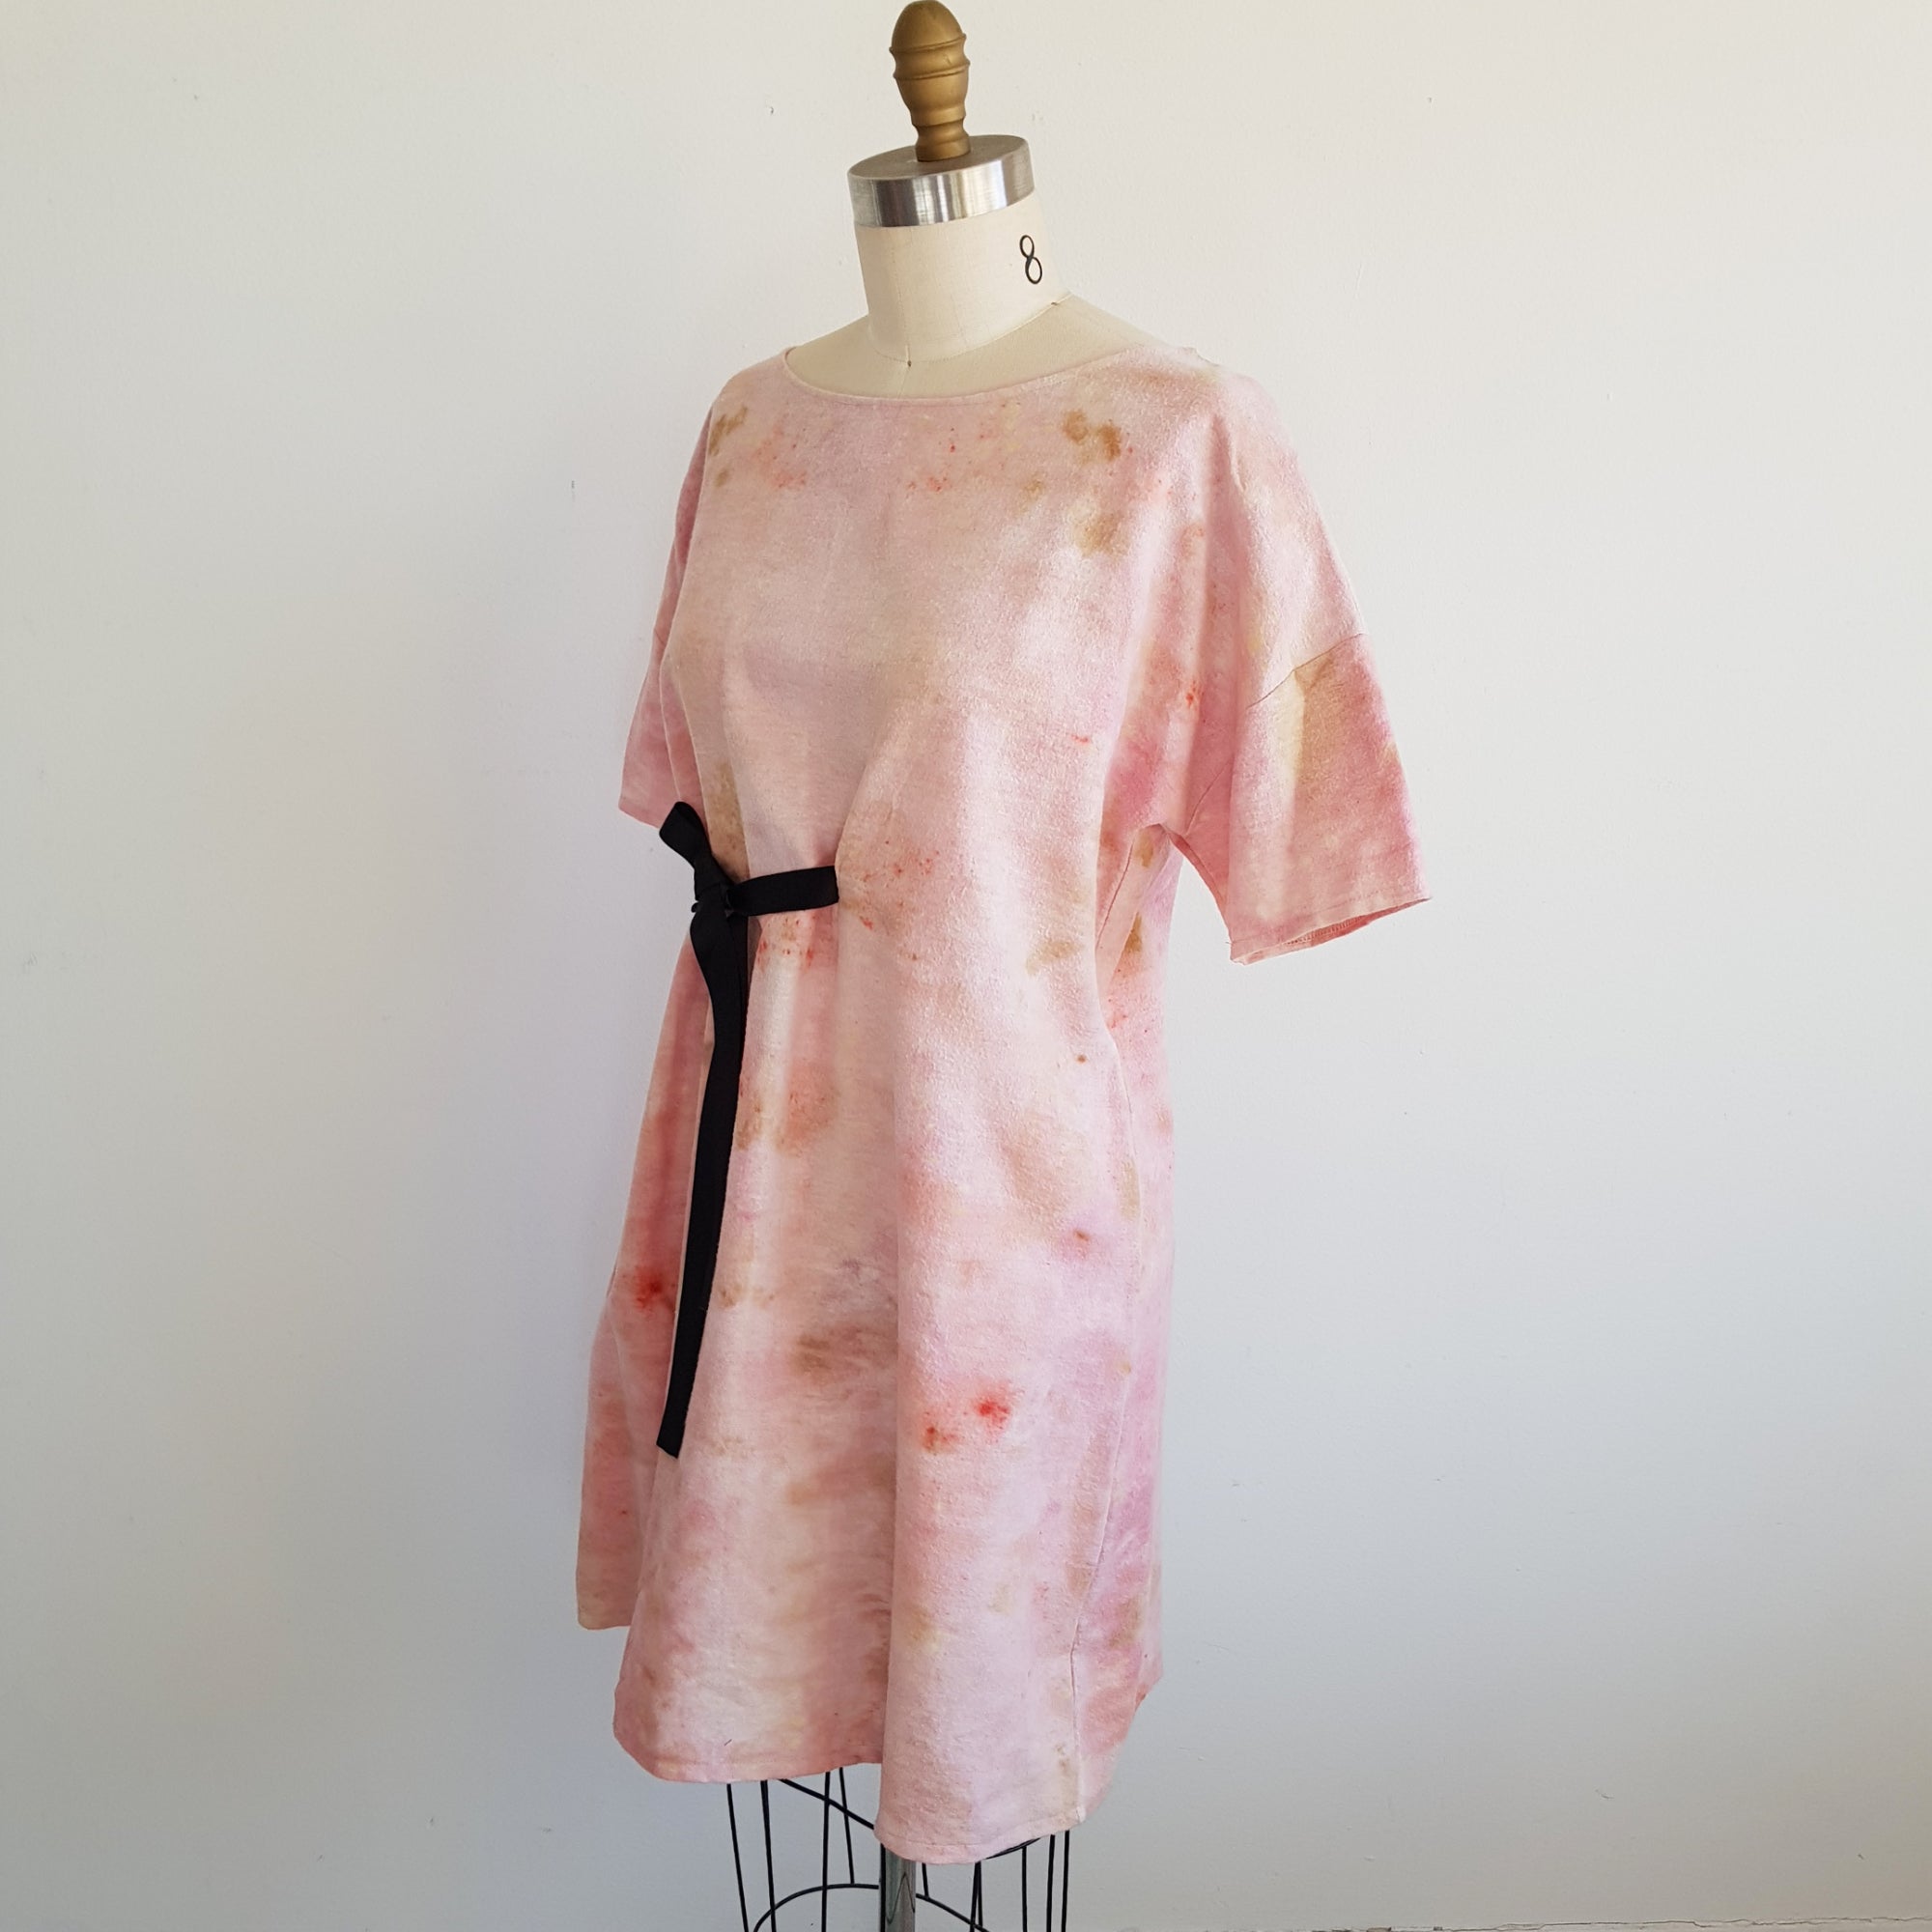 Print fleece dress – cotton Eco prints botanical dye leaf xsilk